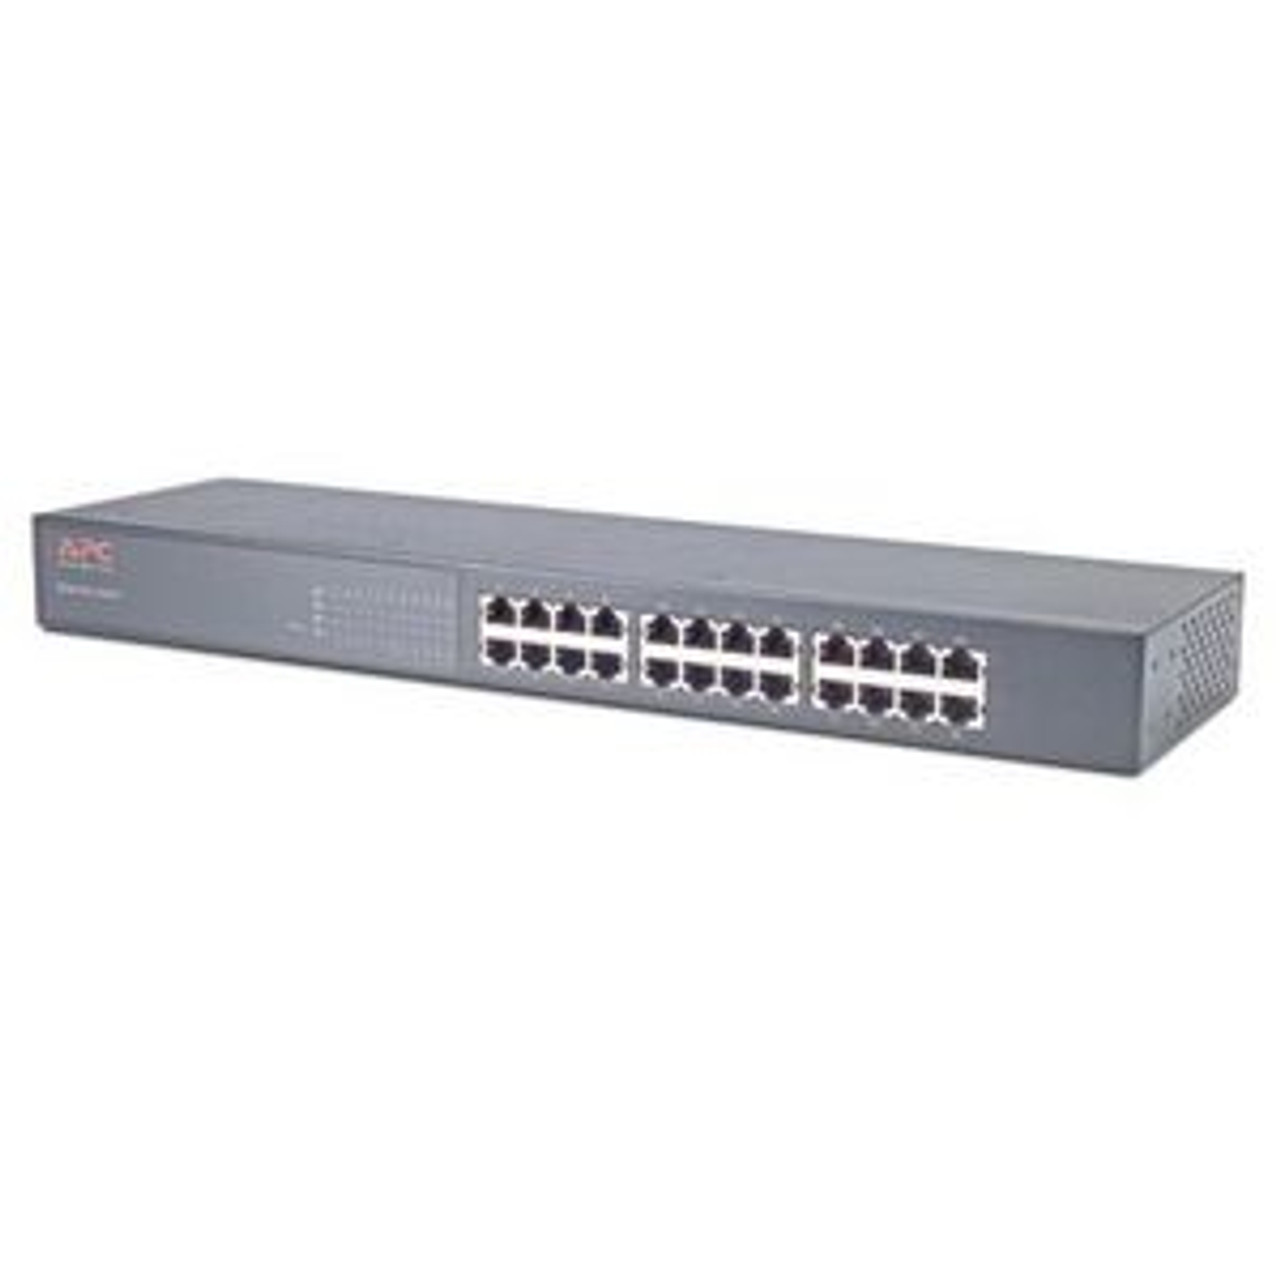 AP9224110 APC 24-Ports 10/100 Ethernet Switch 24 x 10/100Base-TX LAN (Refurbished)